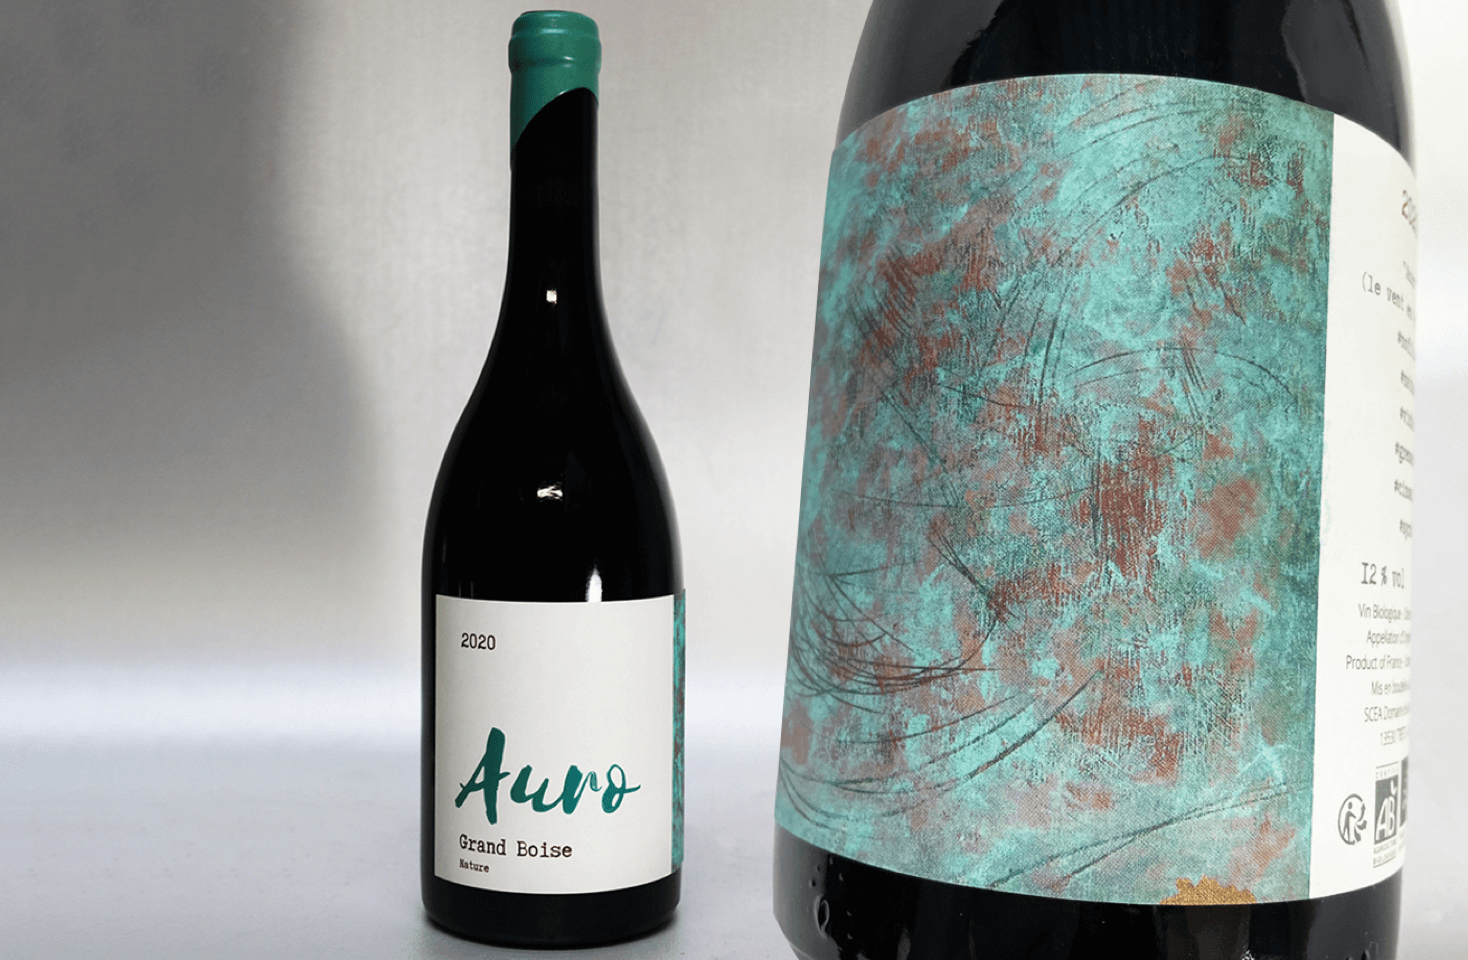 Image of Auro 2020, un’etichetta pittoresca con un’anima